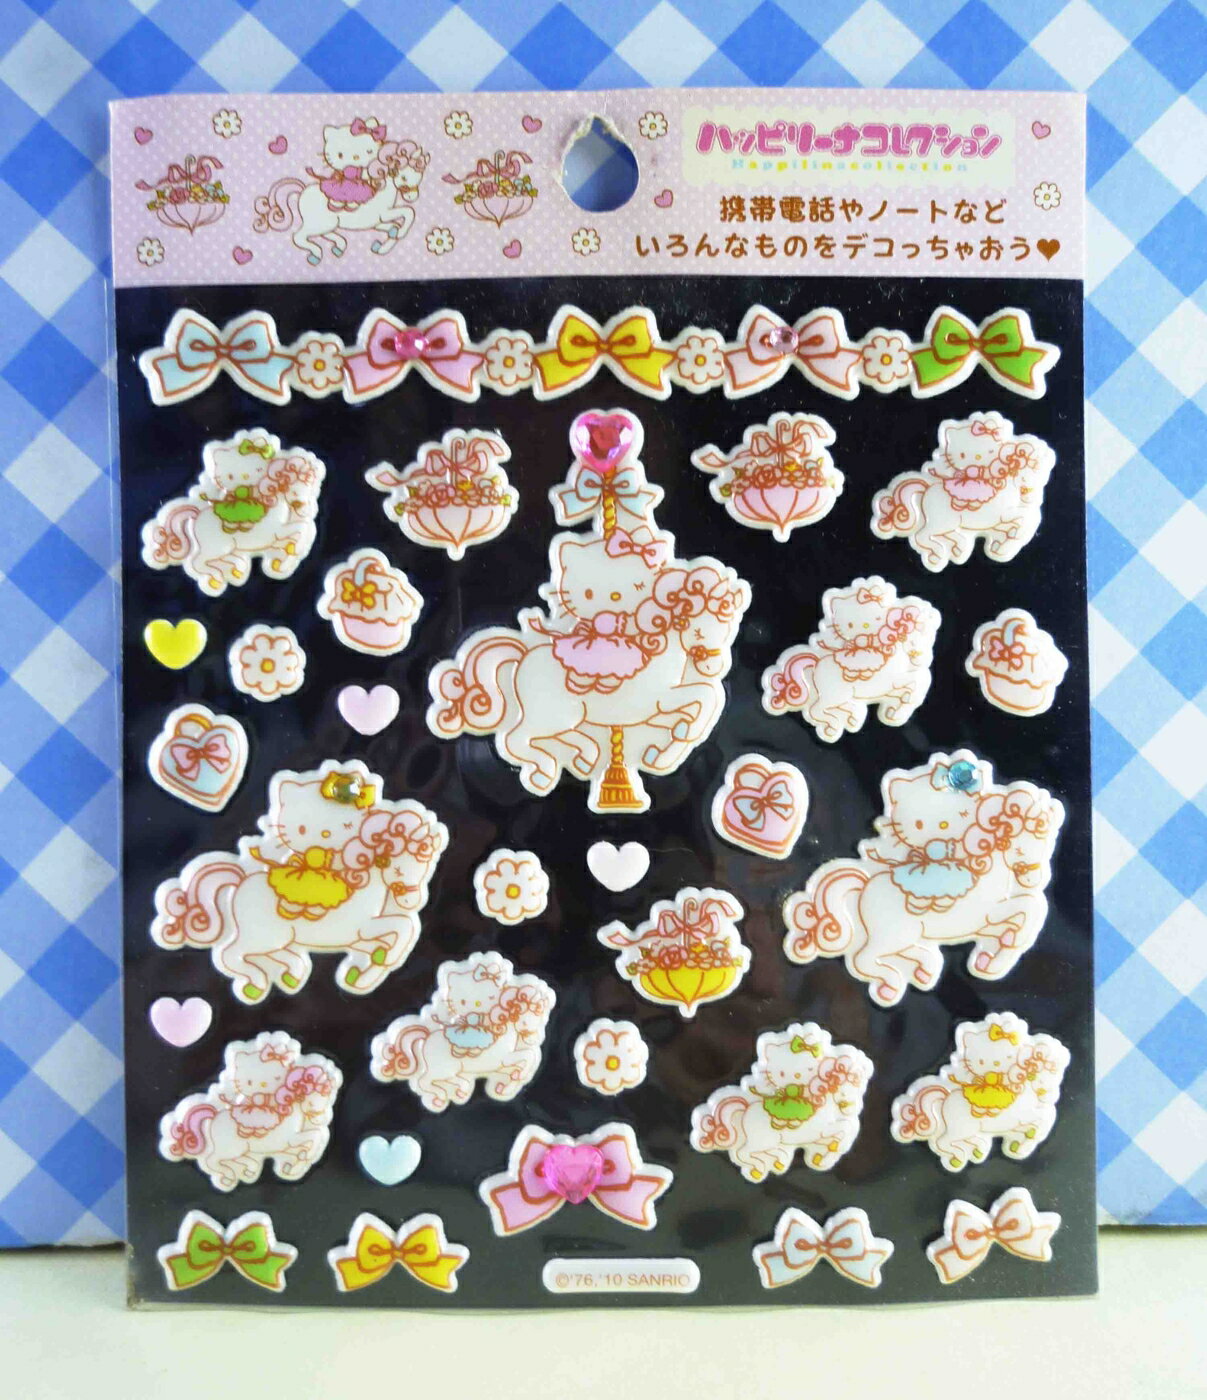 【震撼精品百貨】Hello Kitty 凱蒂貓 KITTY立體鑽貼紙-飛馬 震撼日式精品百貨